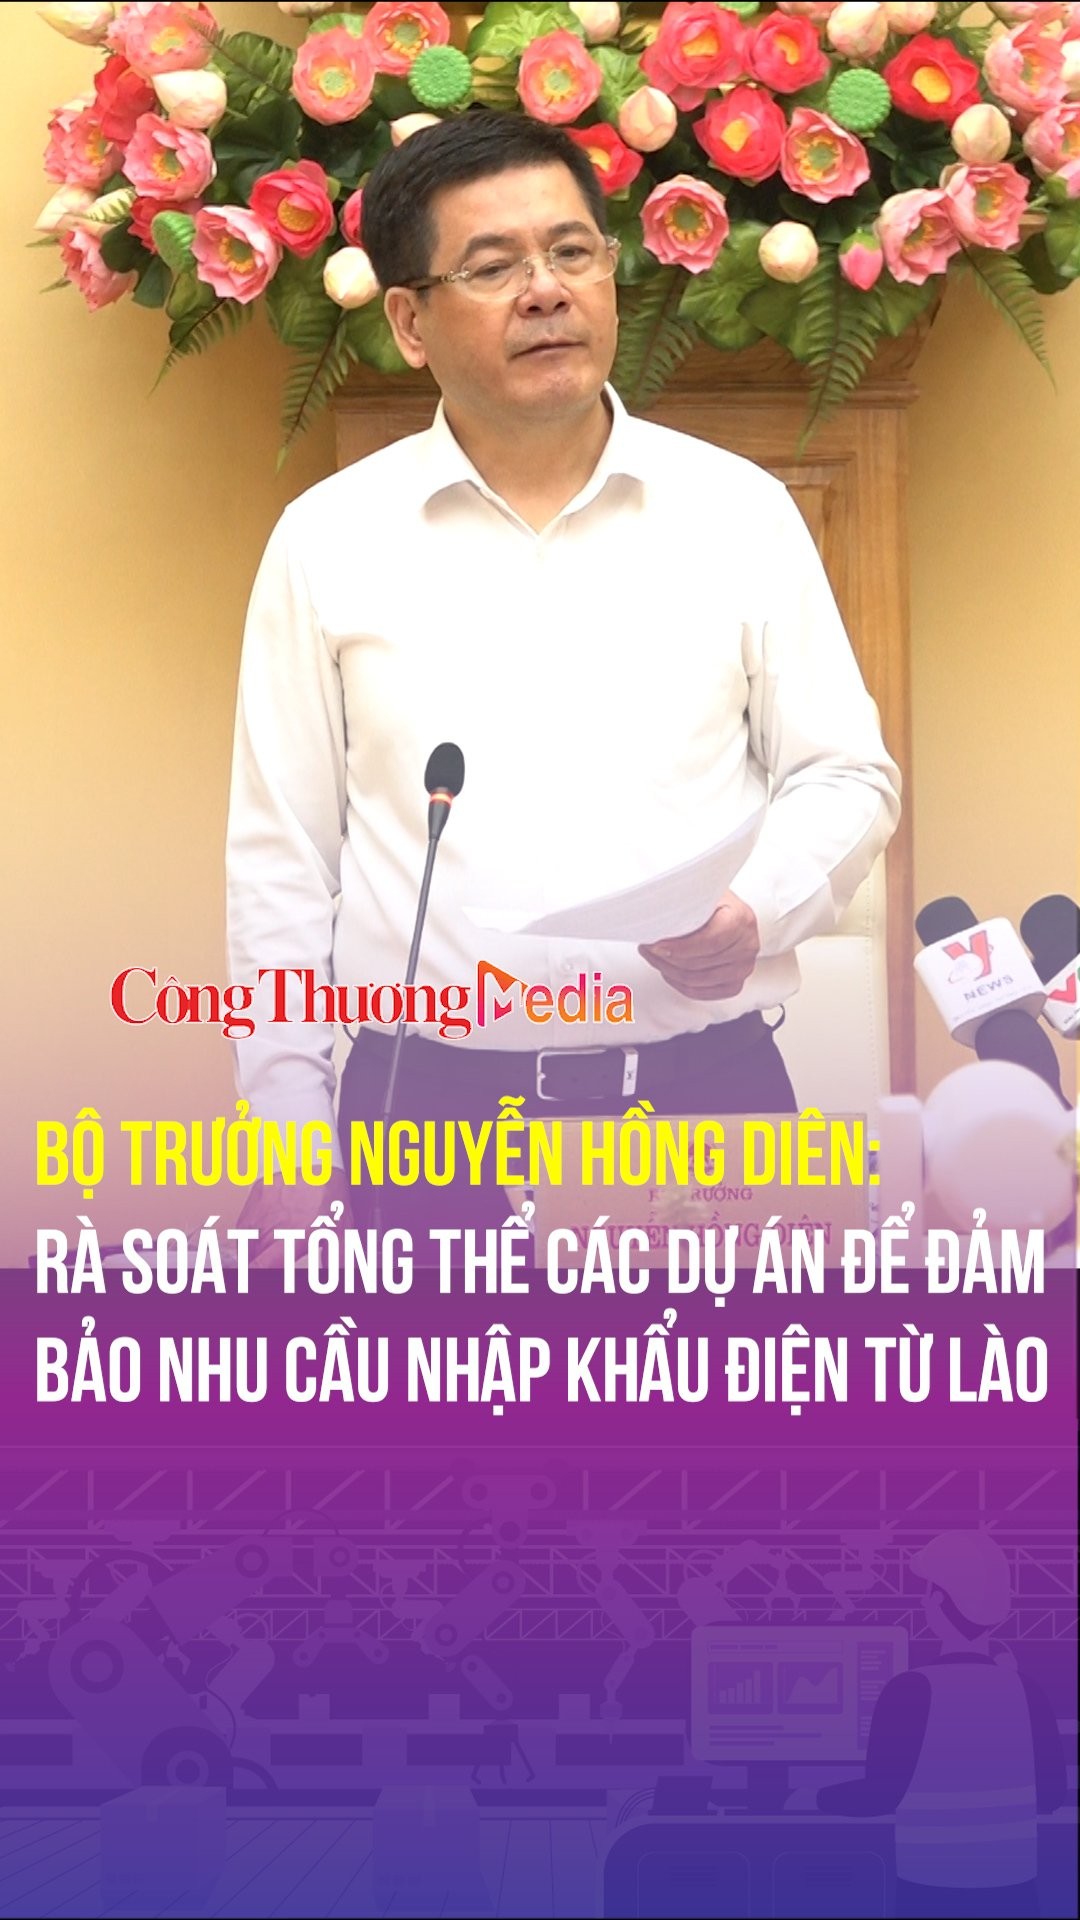 Bộ trưởng Nguyễn Hồng Diên: Rà soát tổng thể các dự án để đảm bảo nhu cầu nhập khẩu điện từ Lào